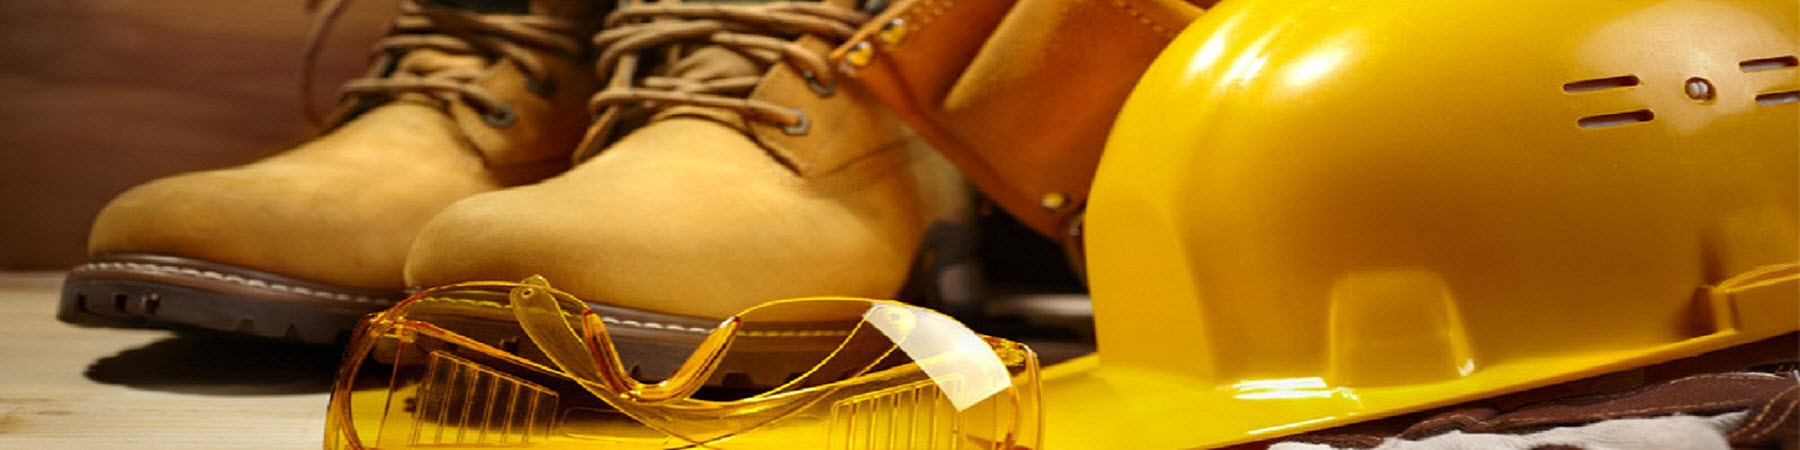 Industrial Footwear